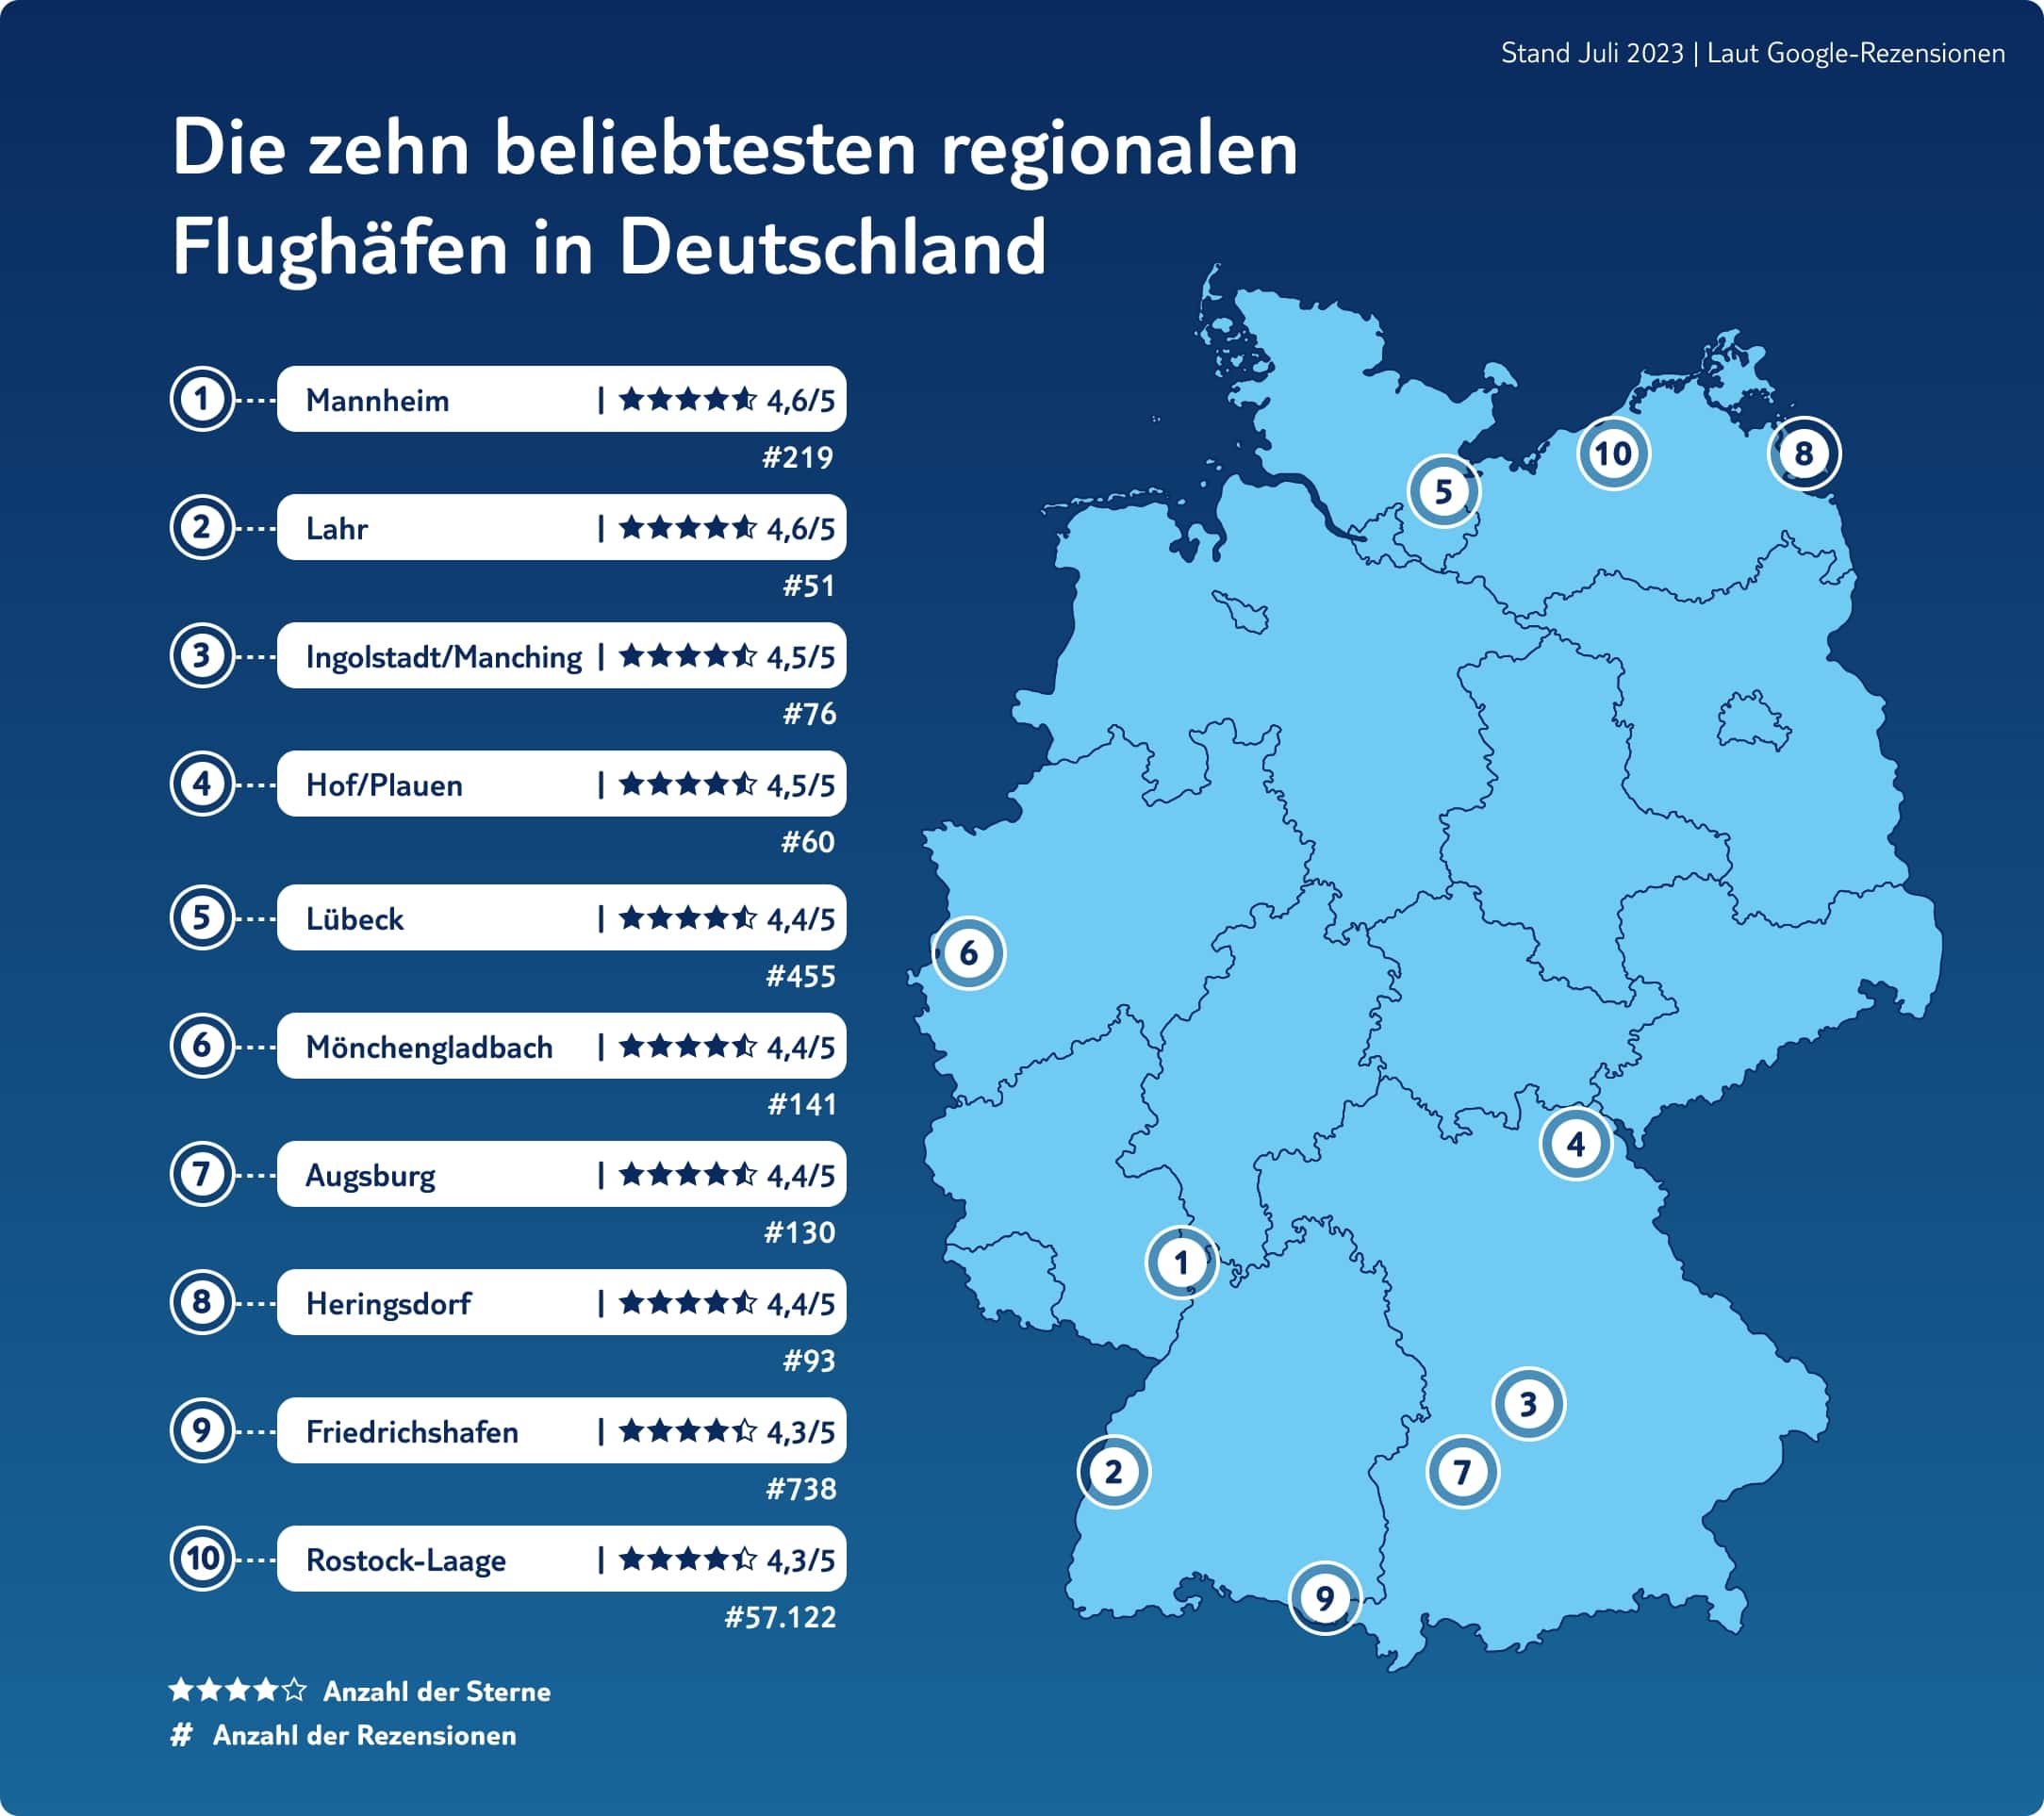 Die zehn beliebtesten regionalen flughaefen in Deutschland